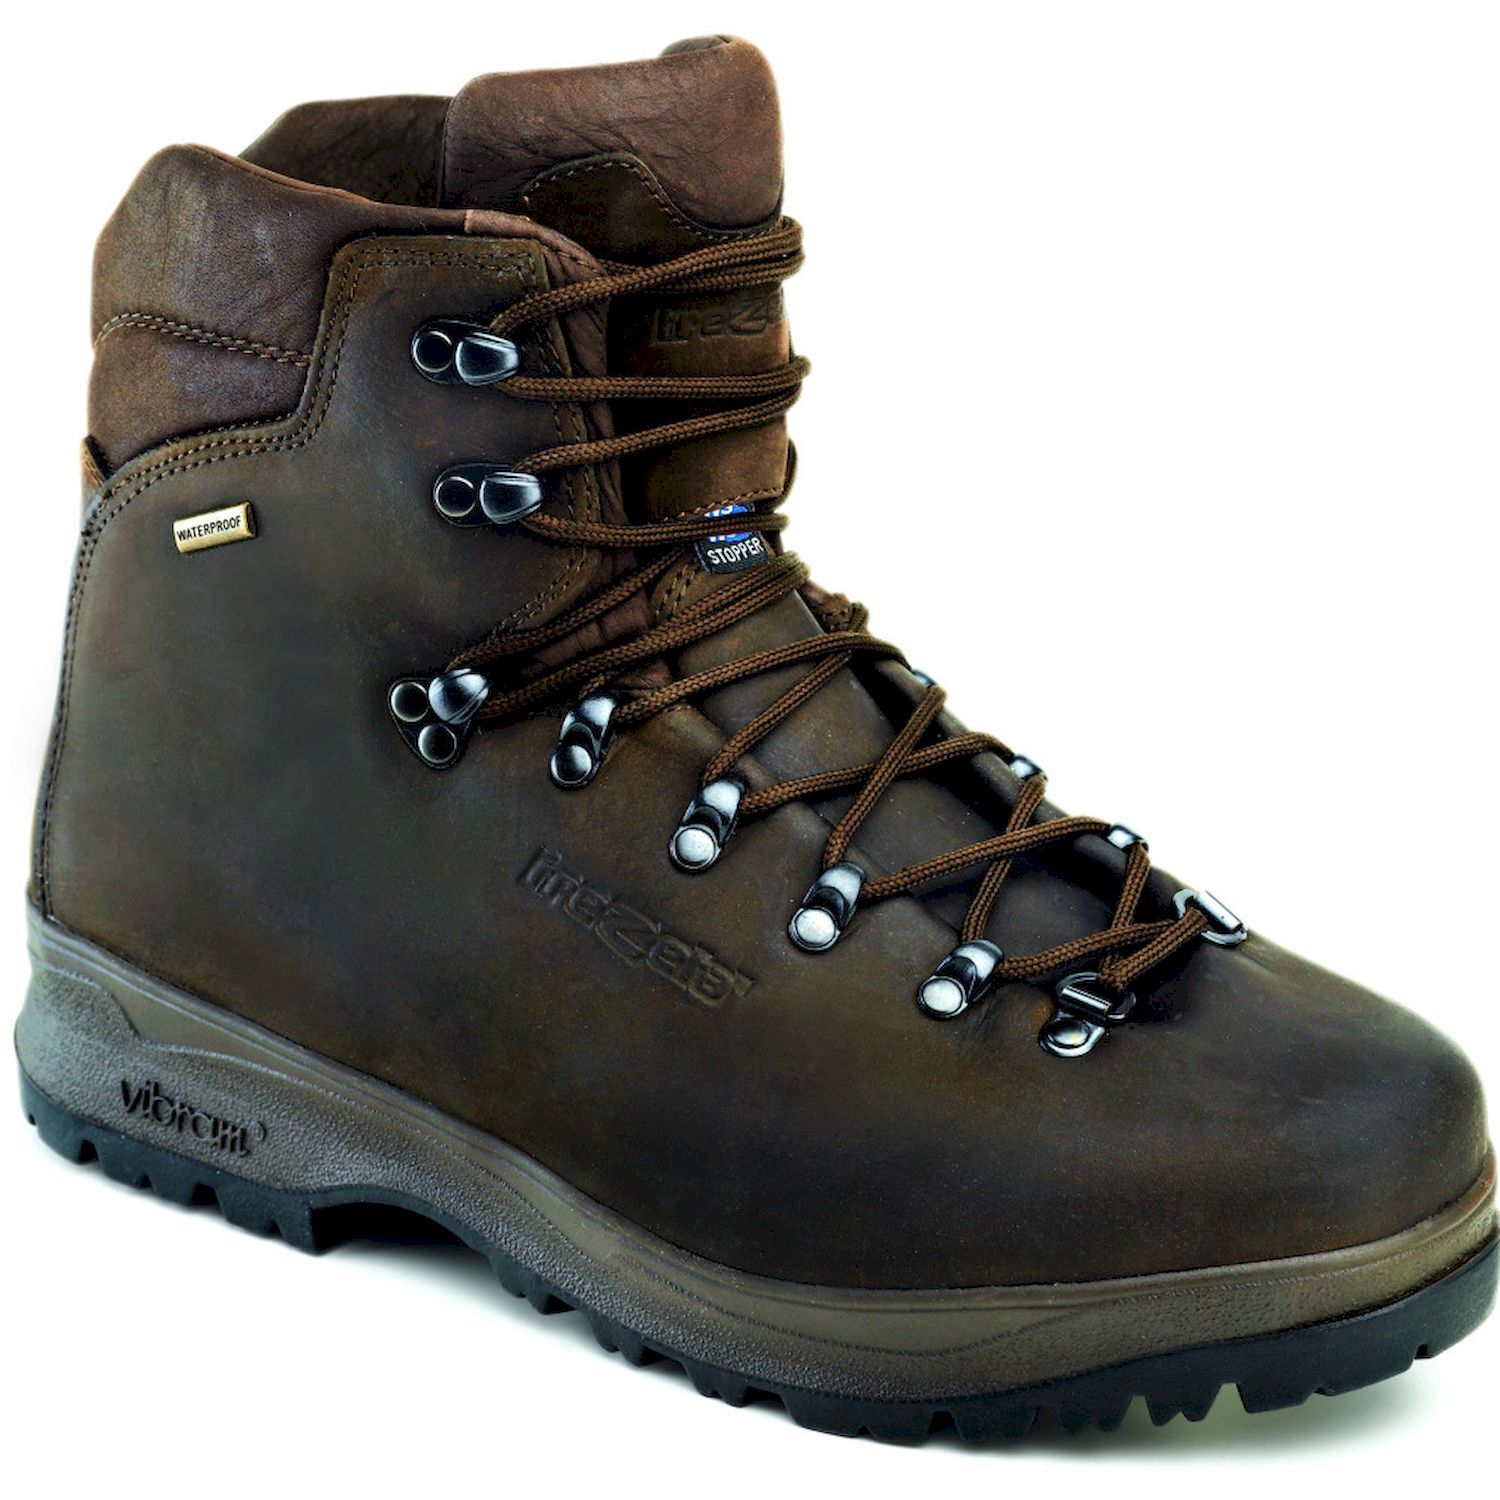 Trezeta Pamir WP - Hiking boots